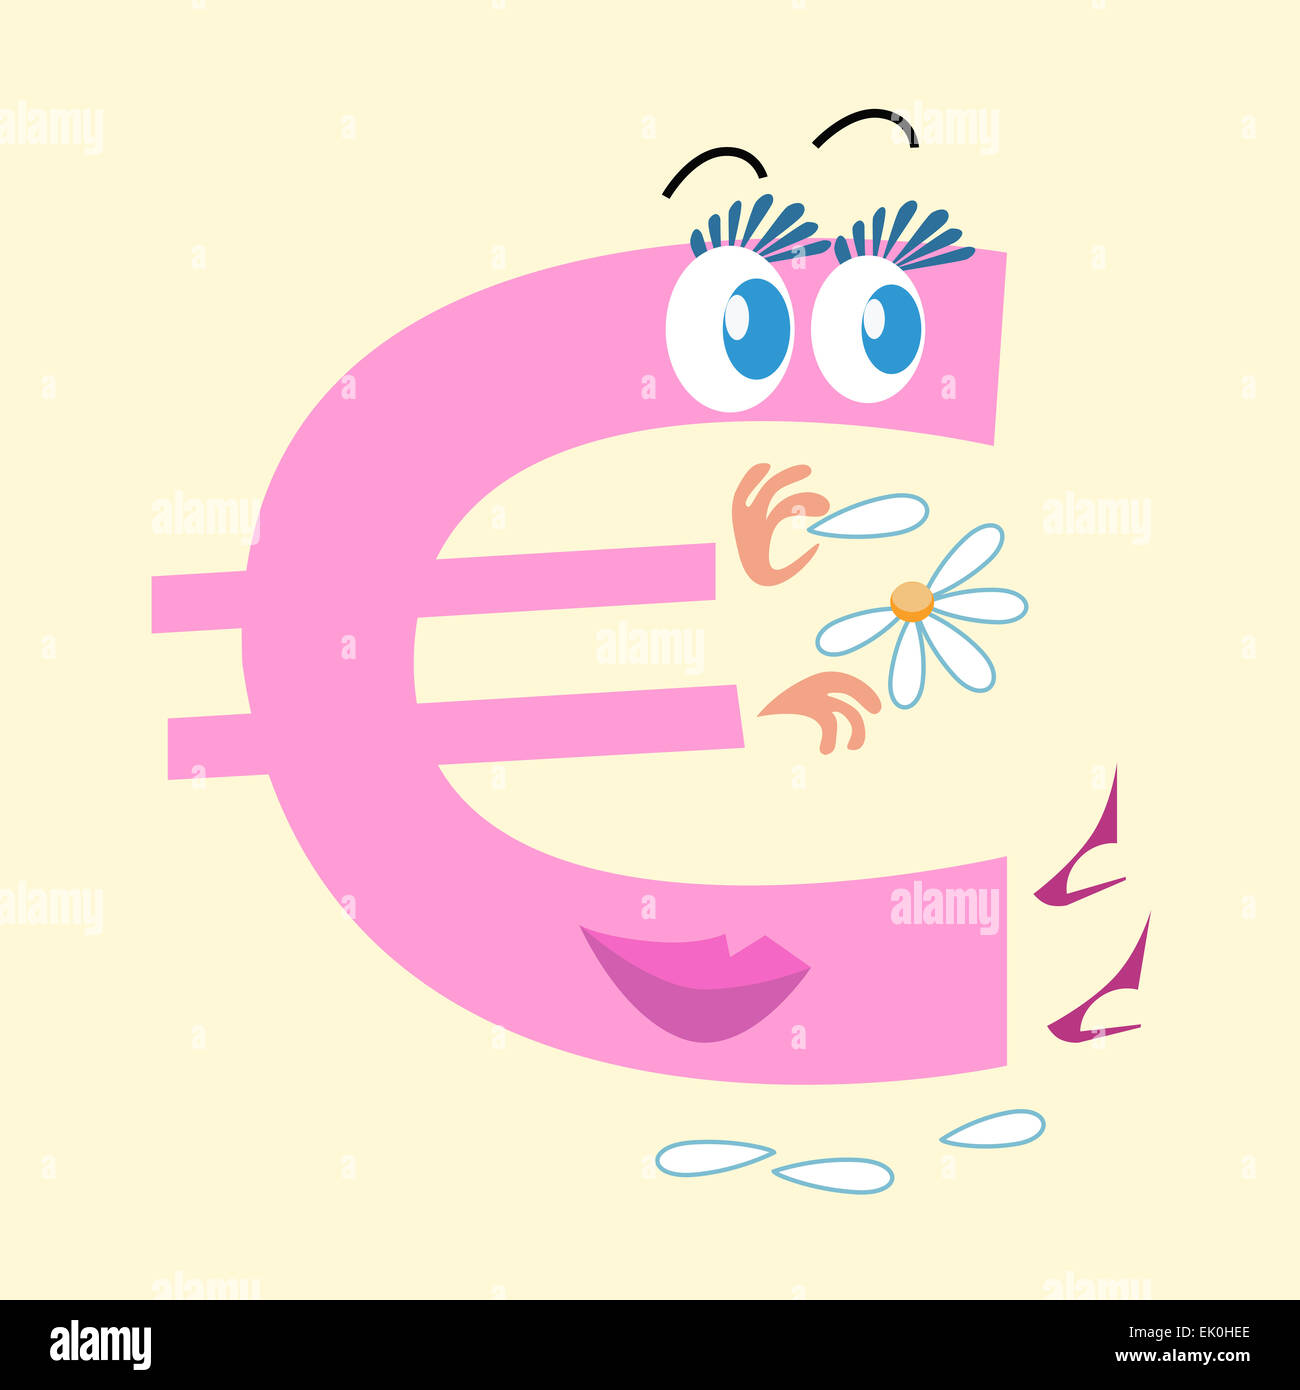 Le symbole de l'Euro est la monnaie nationale de l'Europe. Le caractère de l'Euro sign se demande sur la Marguerite l'aimer ou pas. Business Banque D'Images